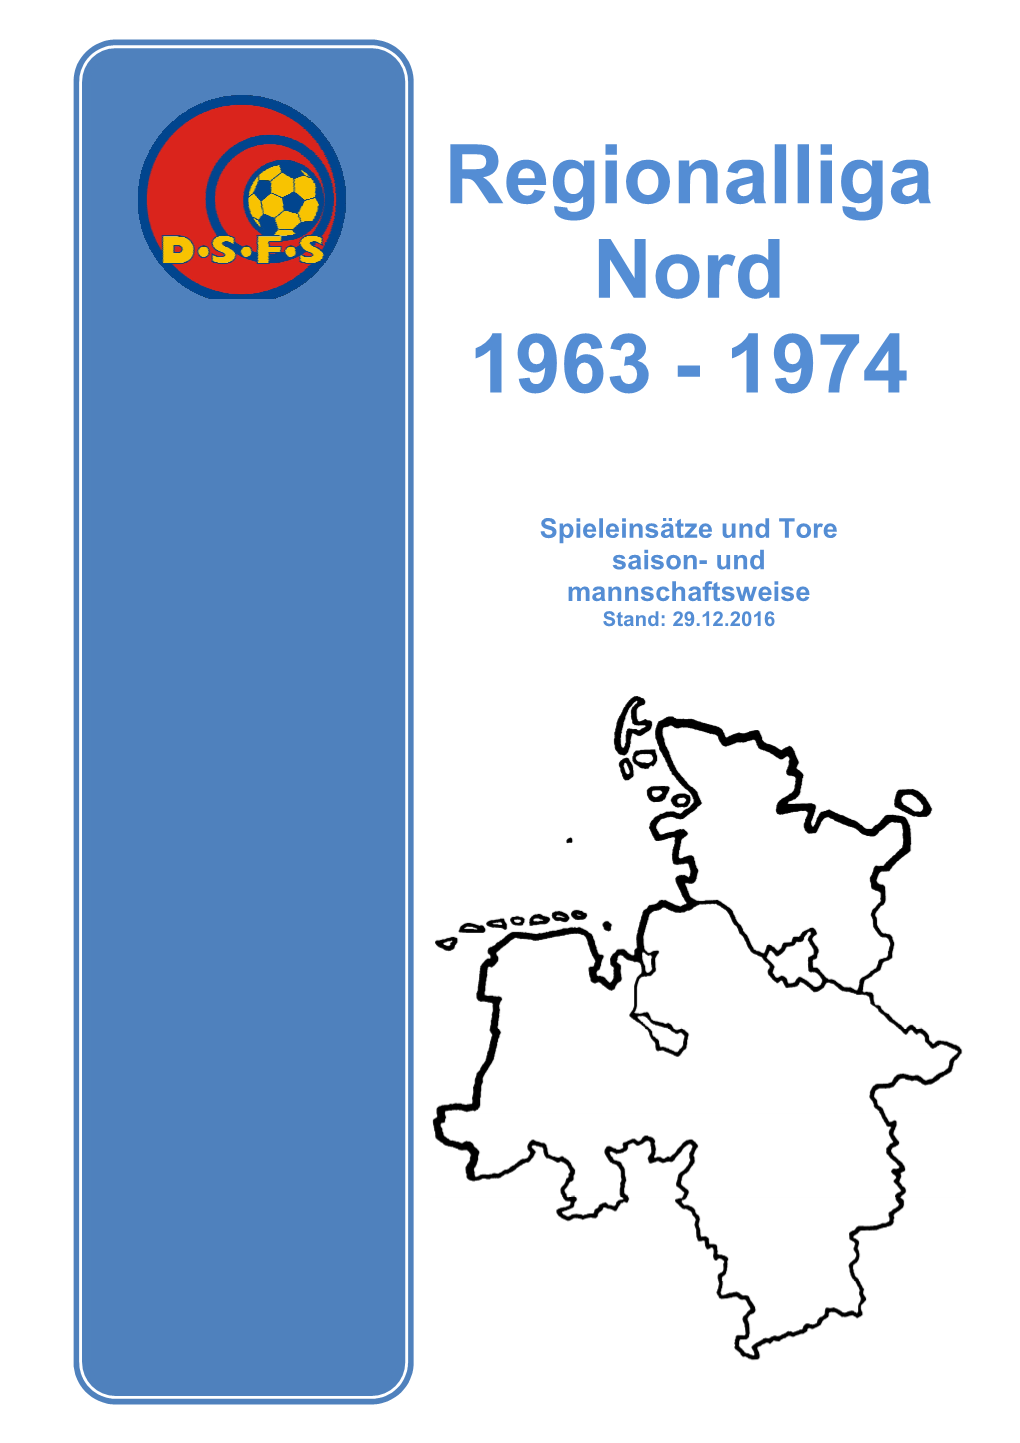 Regionalliga Nord 1963 - 1974